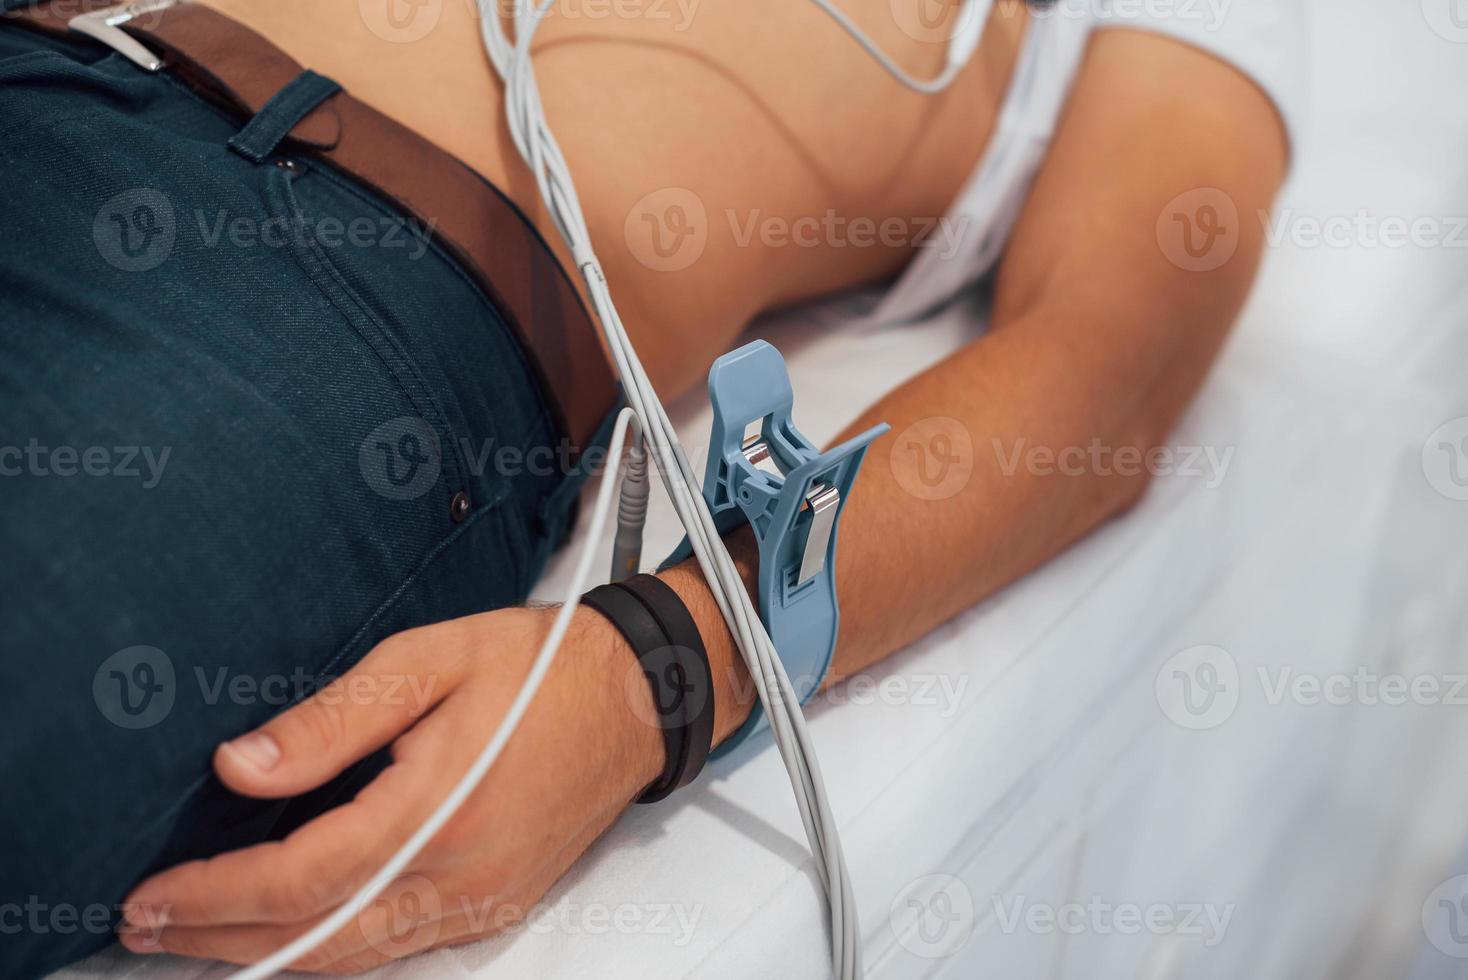 Mann, der in der Klinik auf dem Bett liegt und Elektrokardiogramm-Test erhält foto